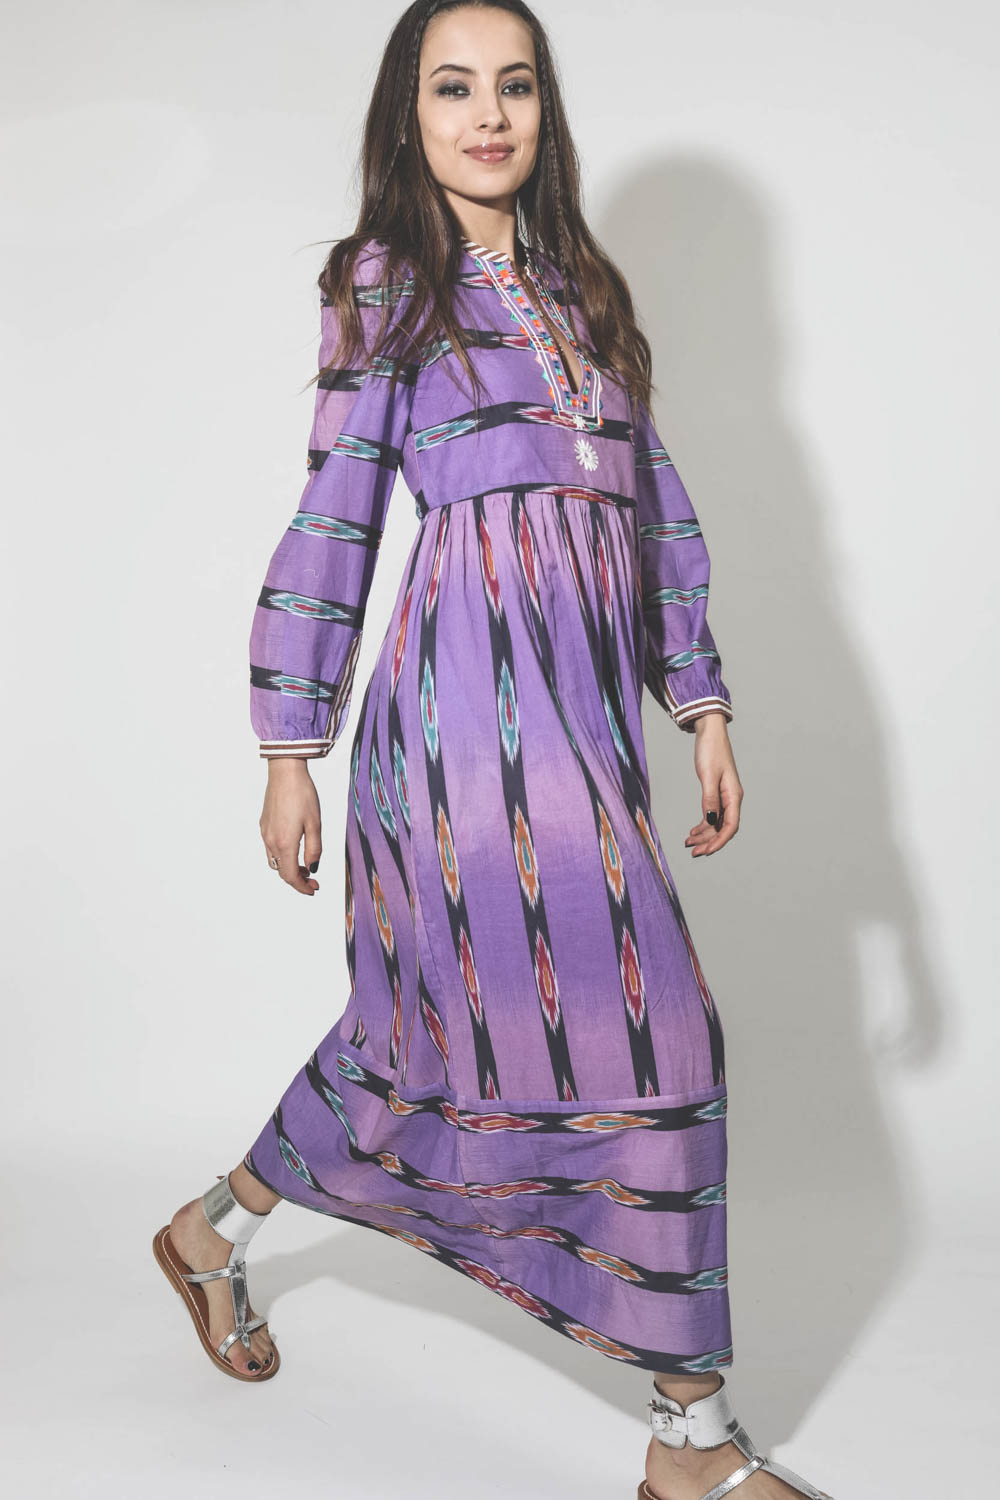 Robe longue manches longues en voile de coton violette imprimée et brodée Alix of Bohemian. Porté avec des sandales.